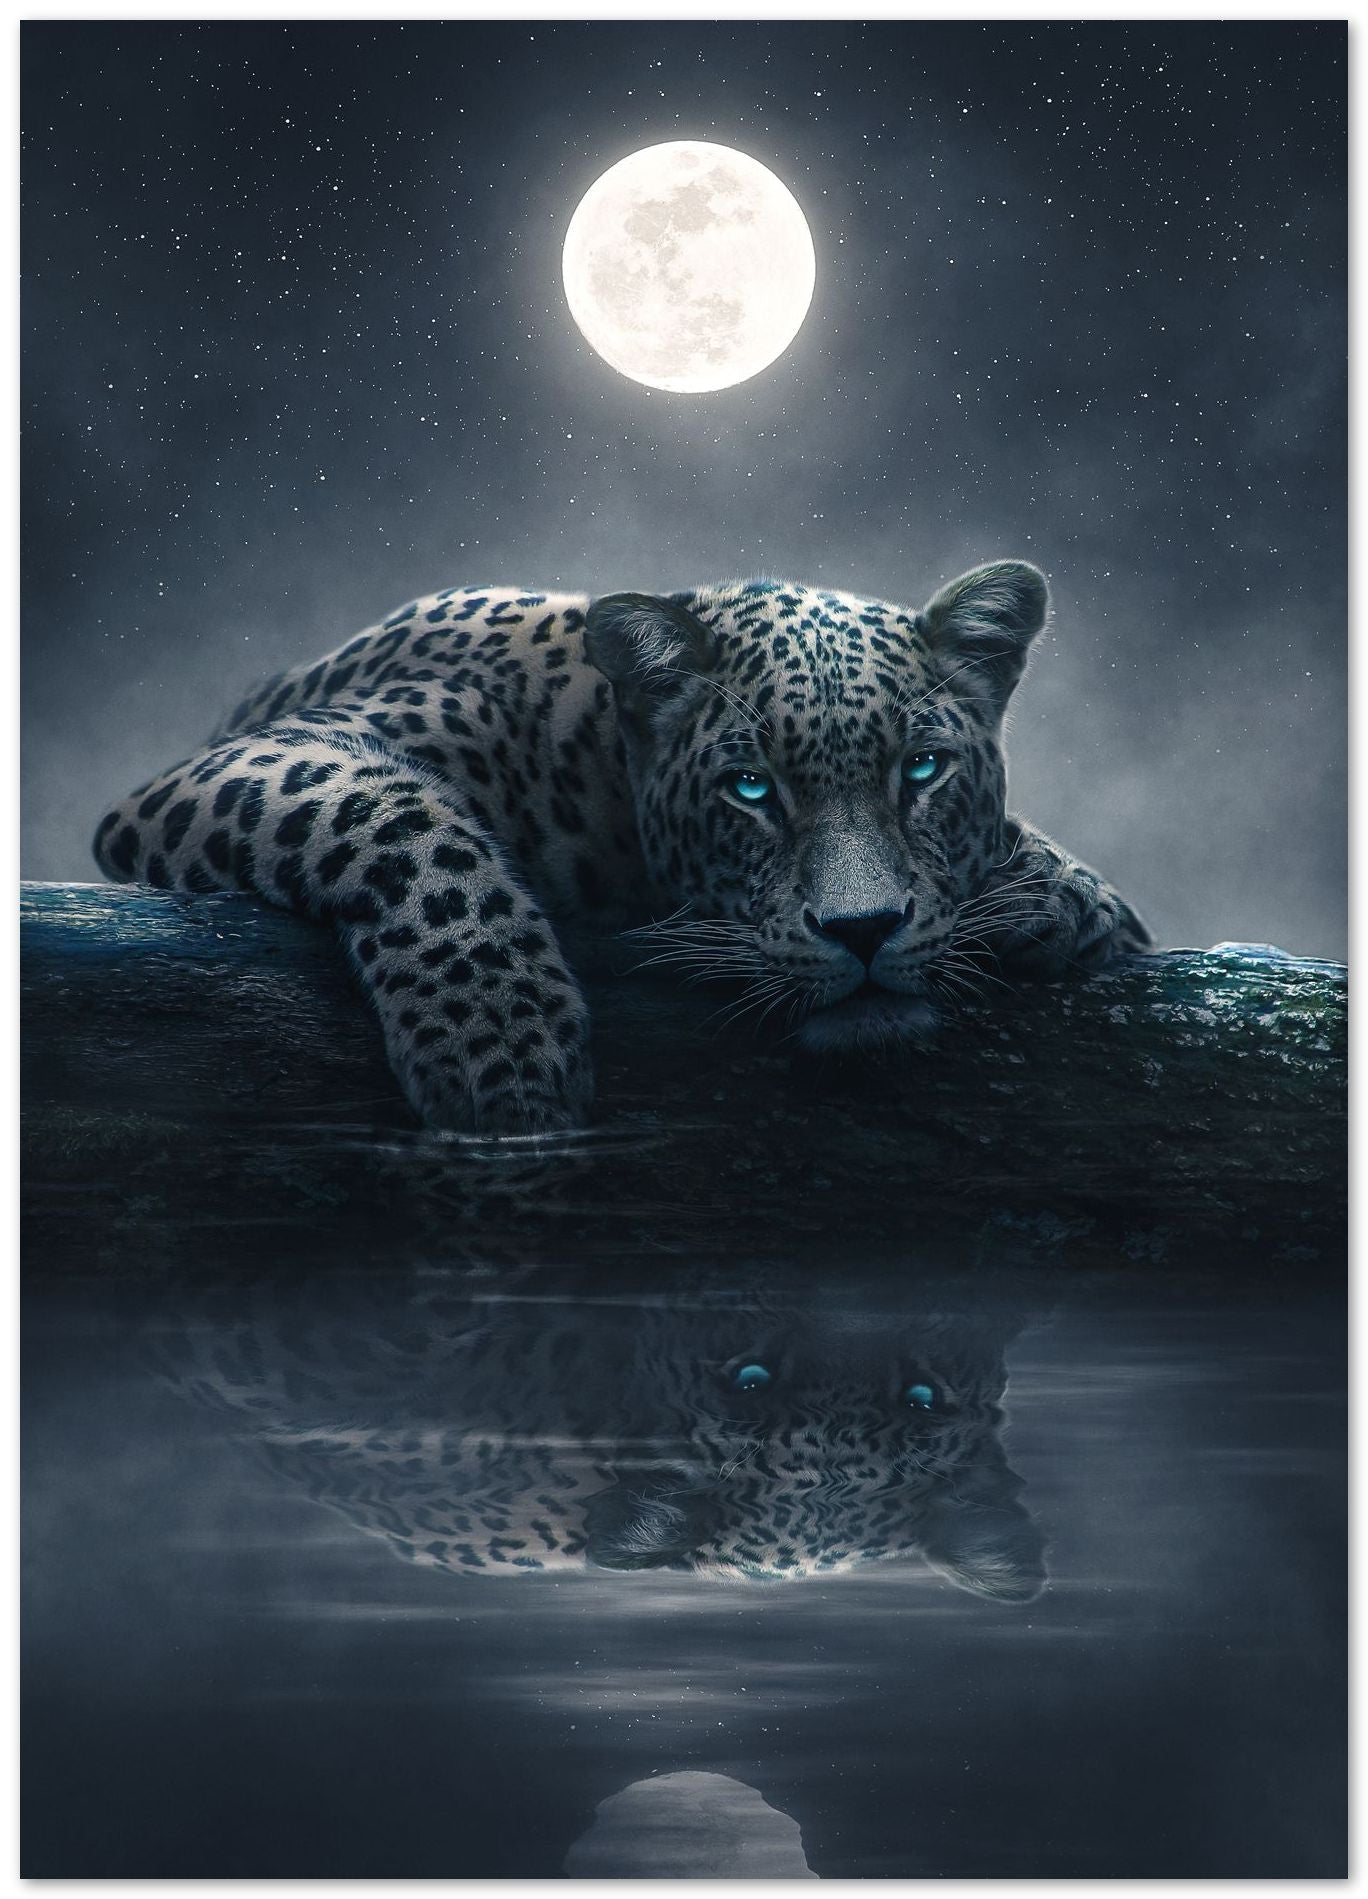 Moonlit Jaguar - @AdamCousins